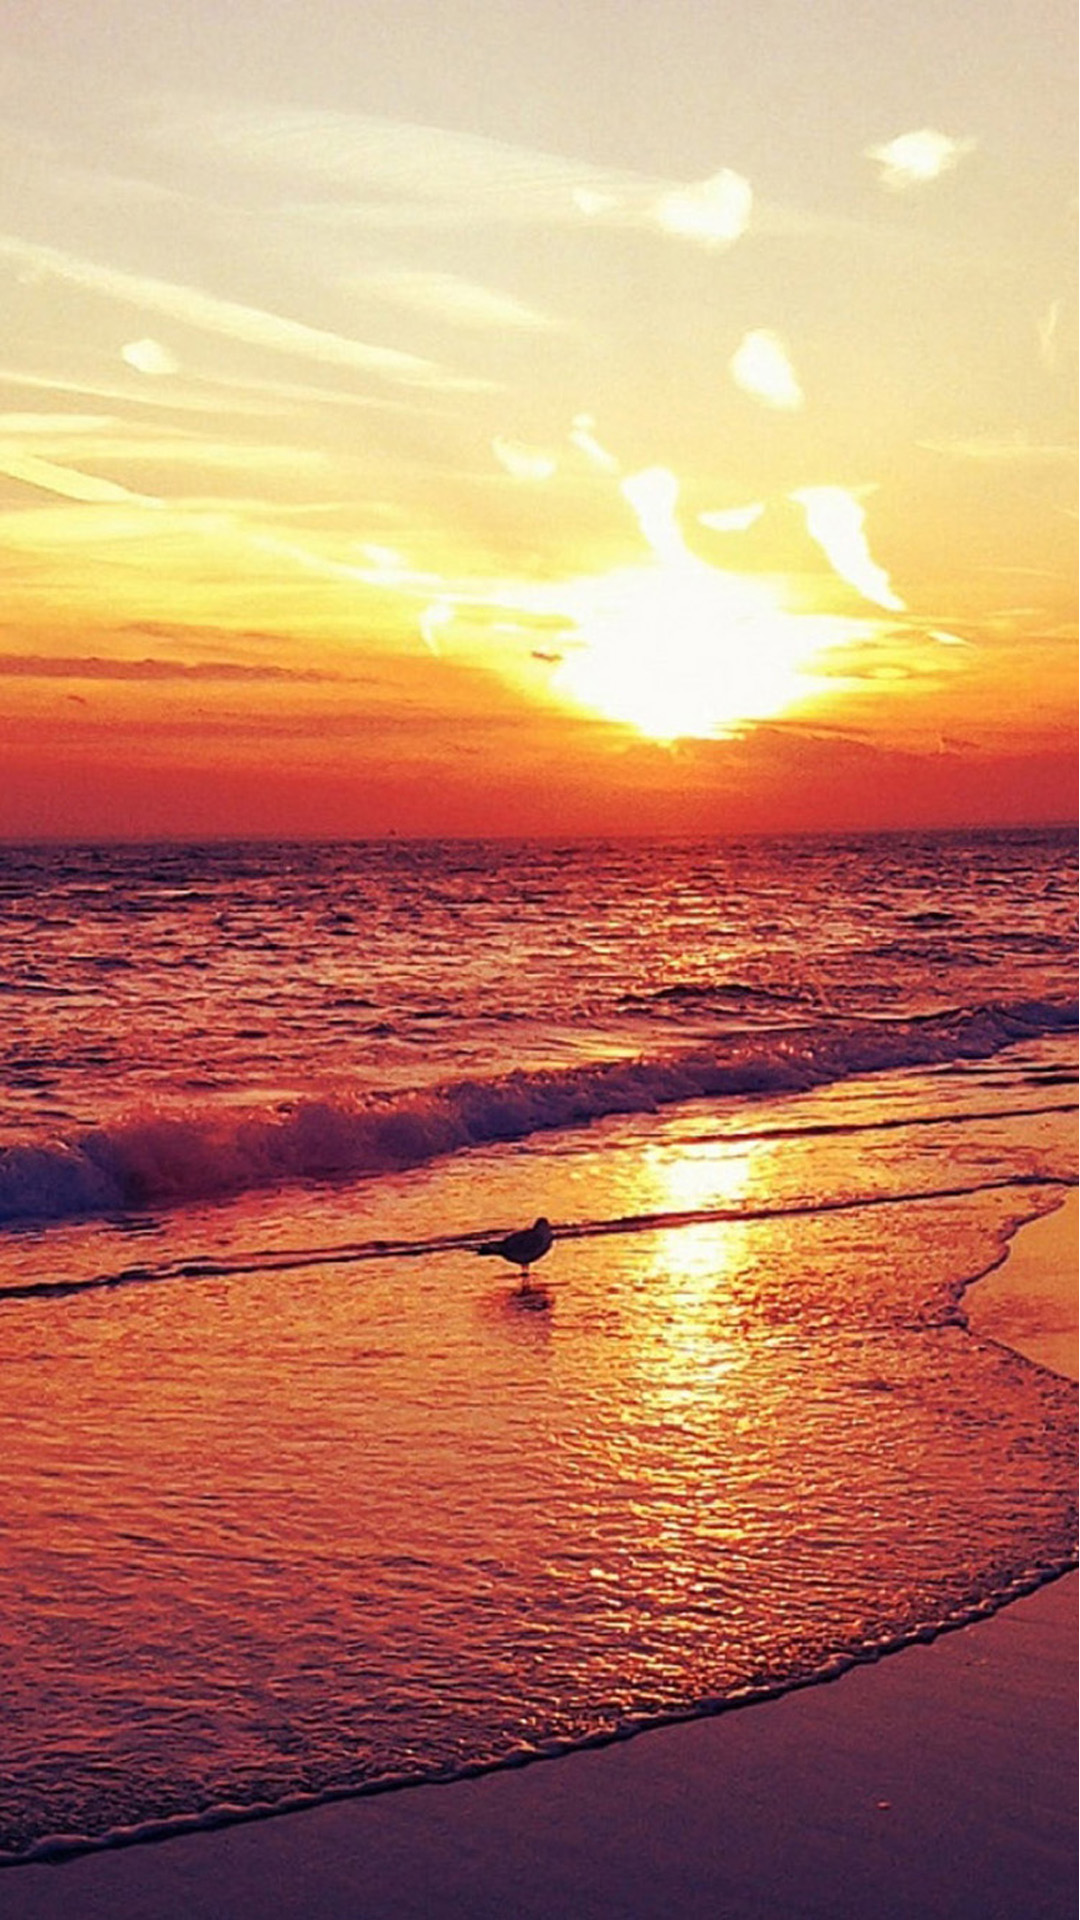 Sunset Beach Landscape iPhone Wallpaper